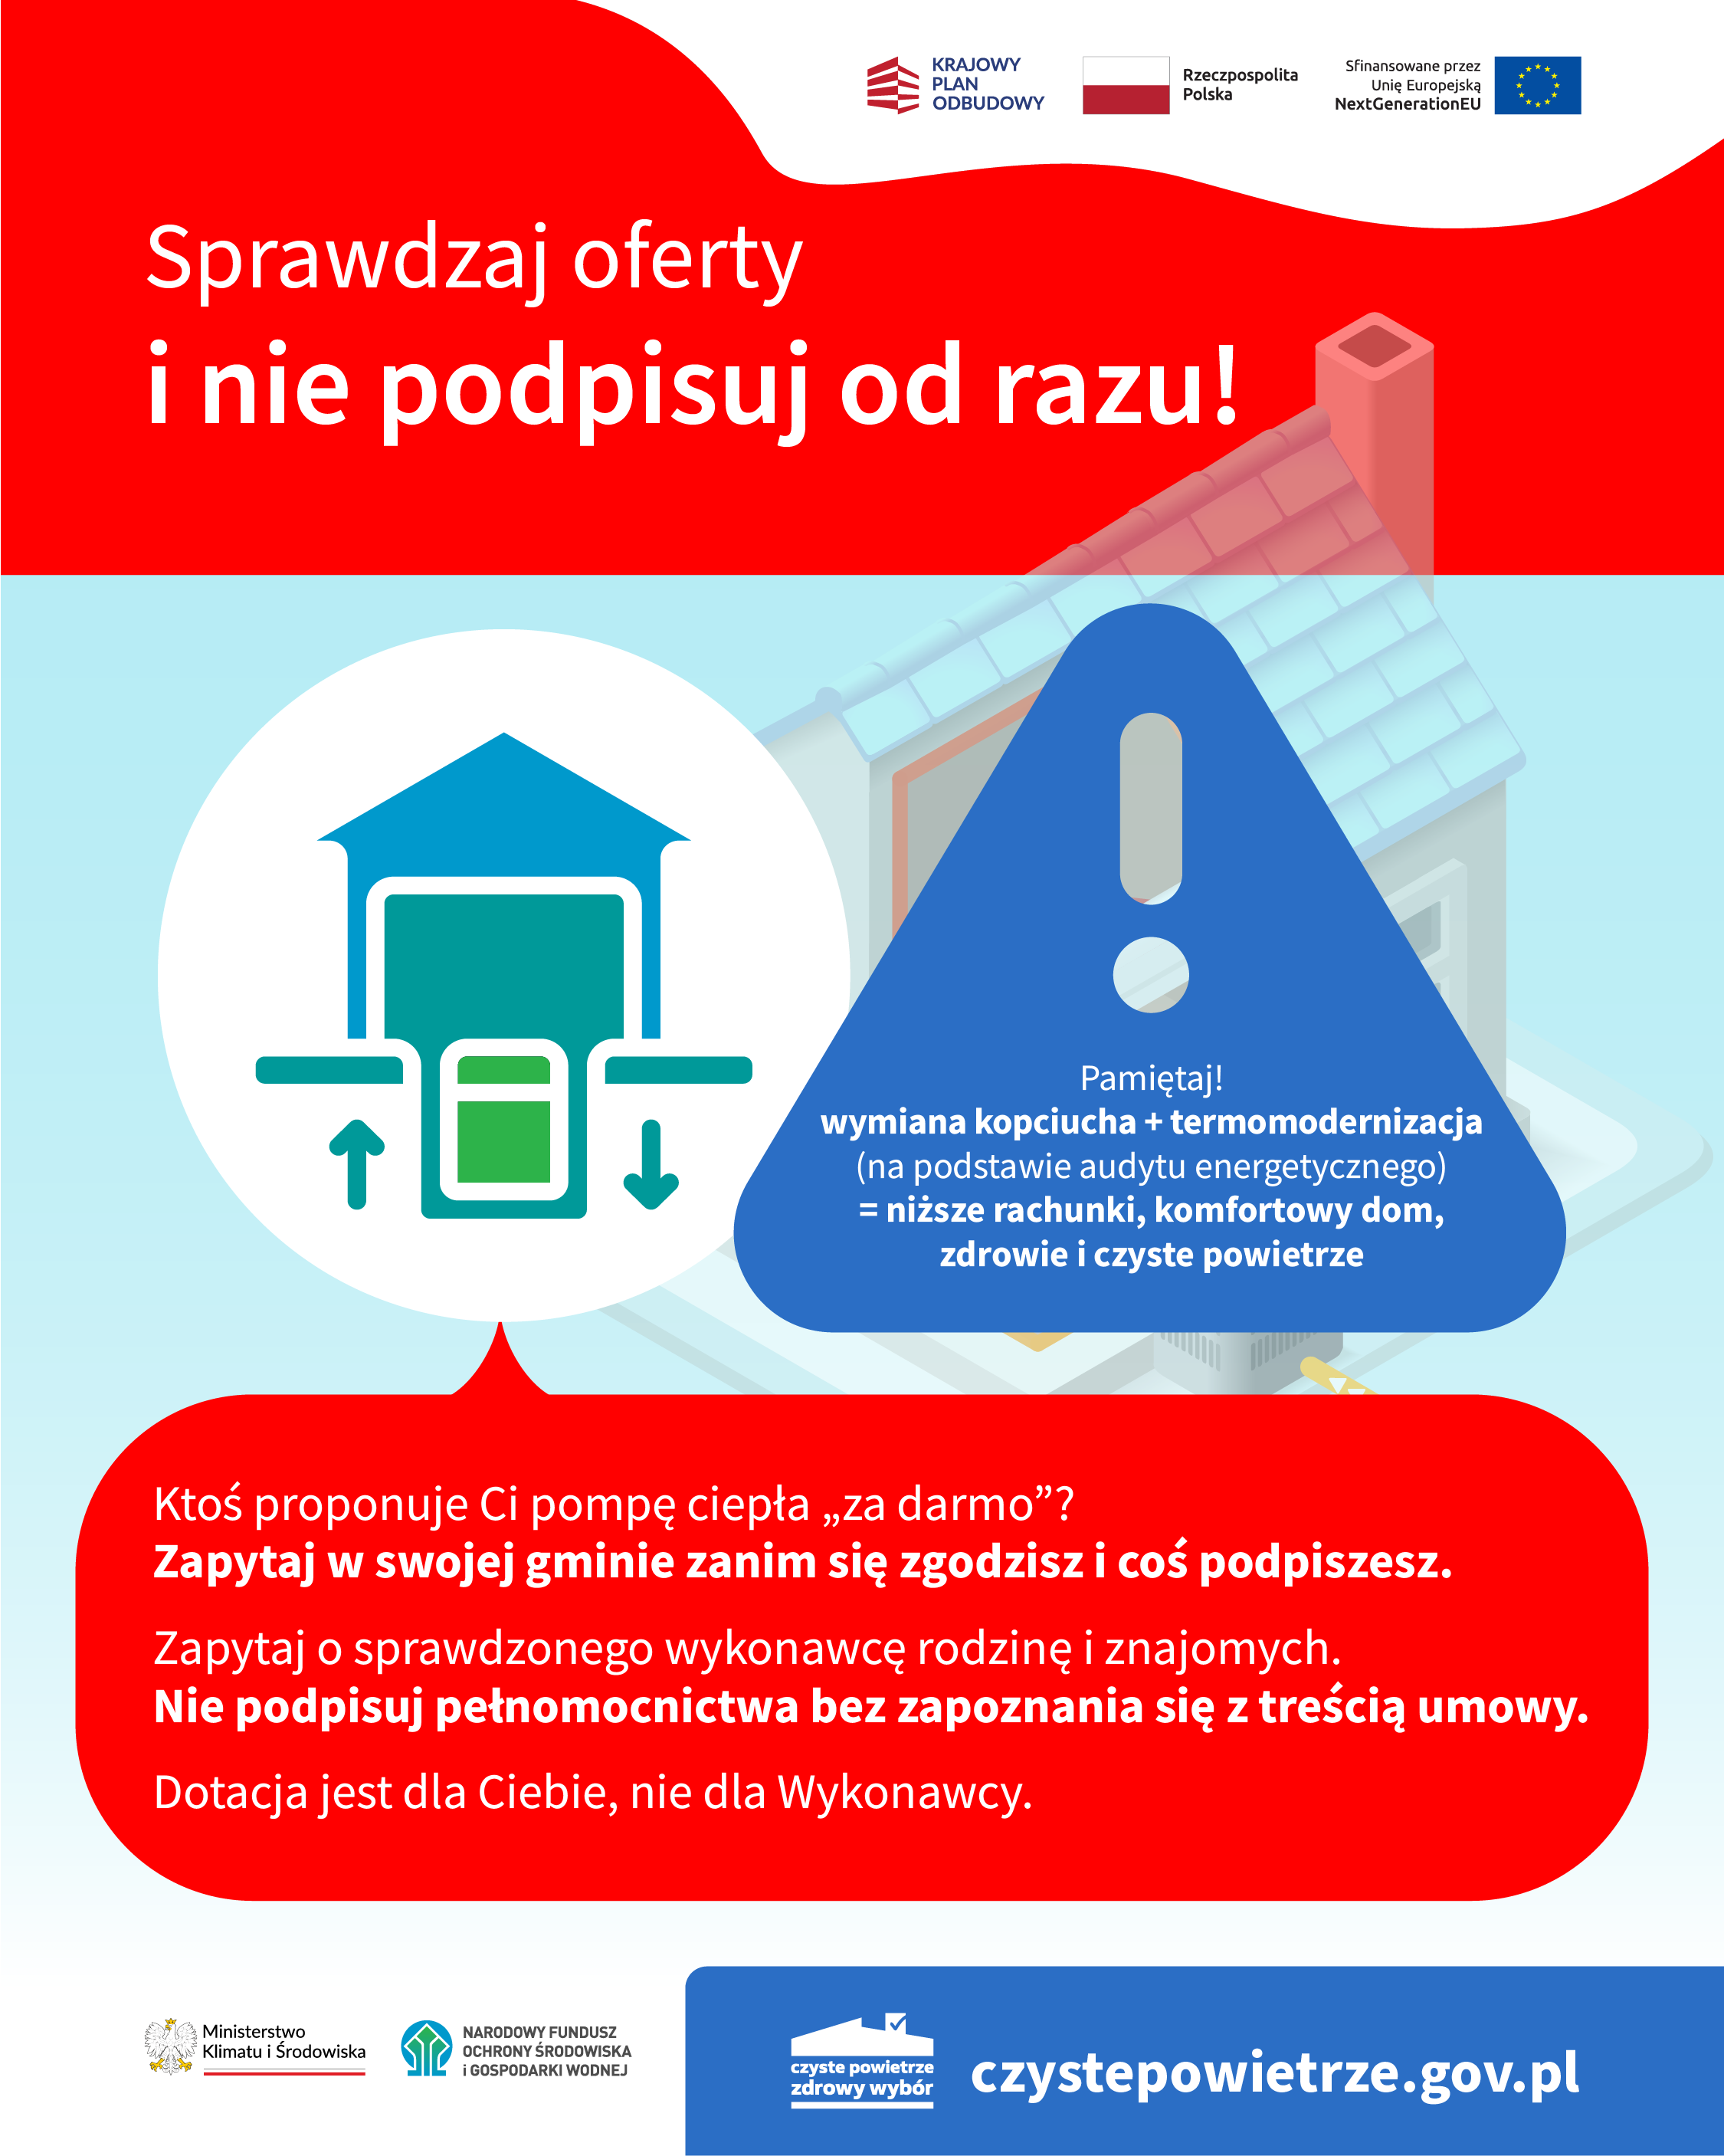 Plakat informacyjny „Sprawdzaj oferty i nie podpisuj od razu” promujący program "Czyste Powietrze" z grafikami domu, drzewa i symbolem energii, zawiera też adres strony czystepowietrze.gov.pl.